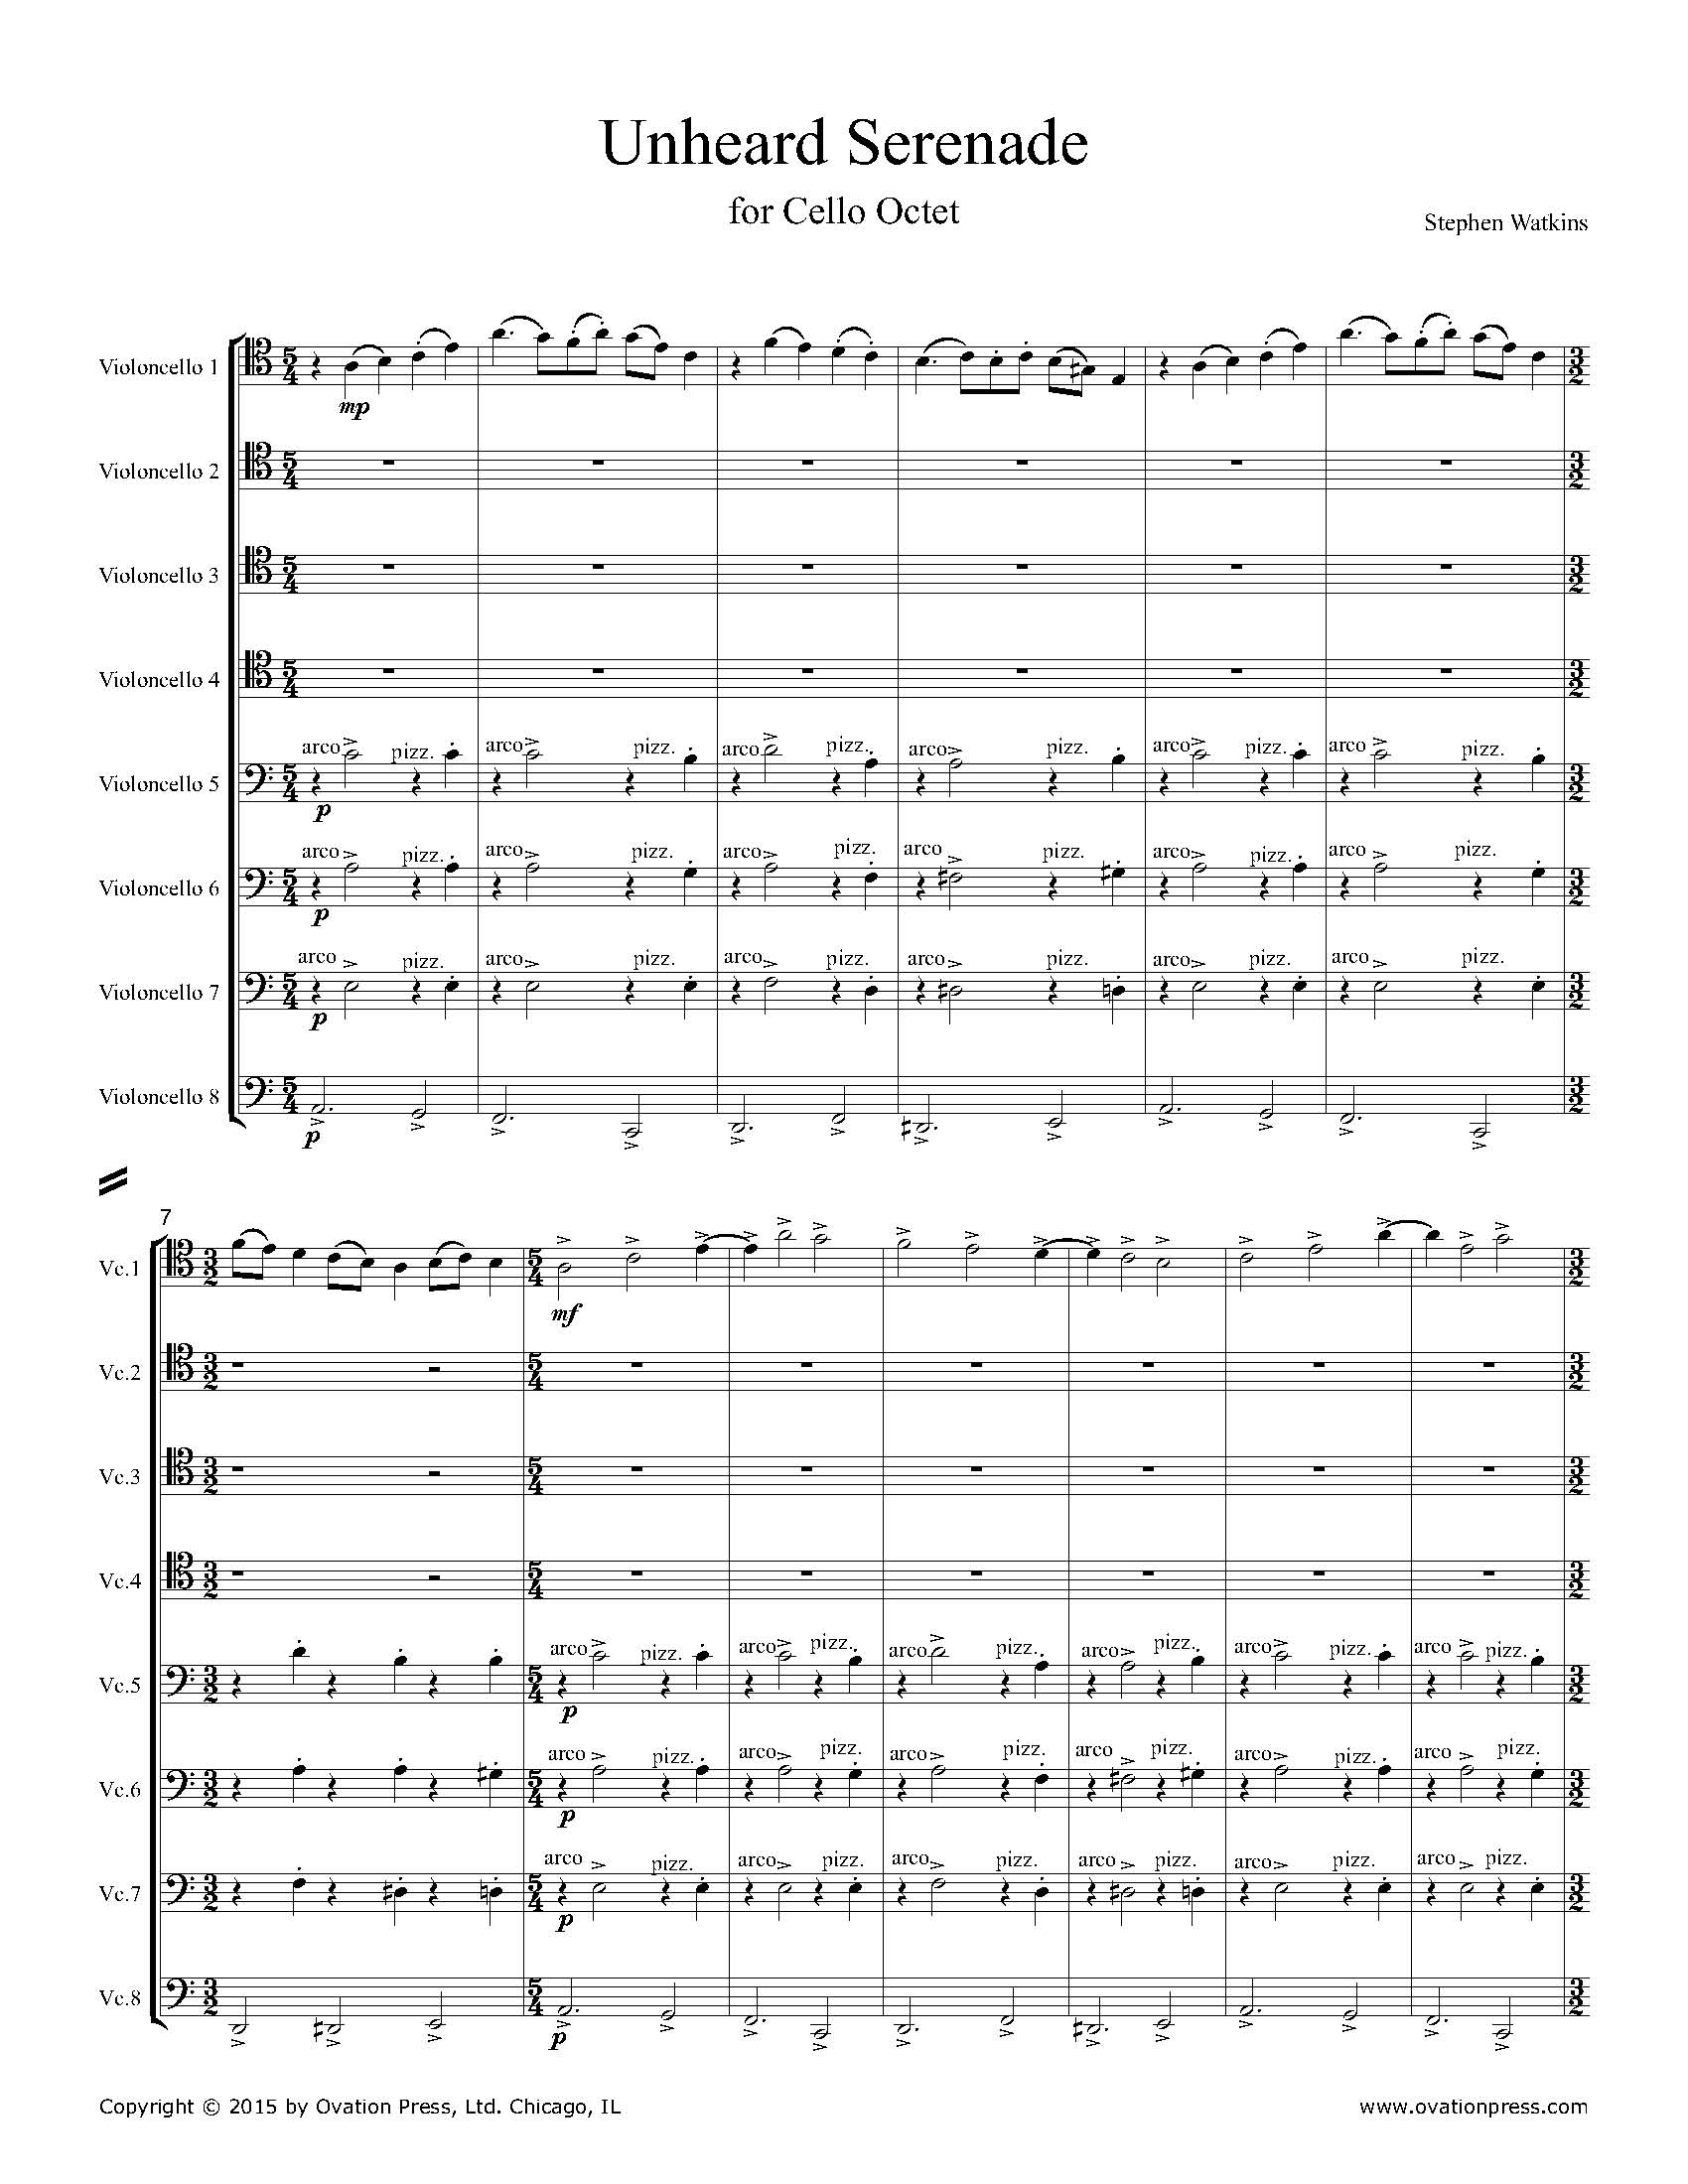 Unheard Serenade (for Cello Octet)